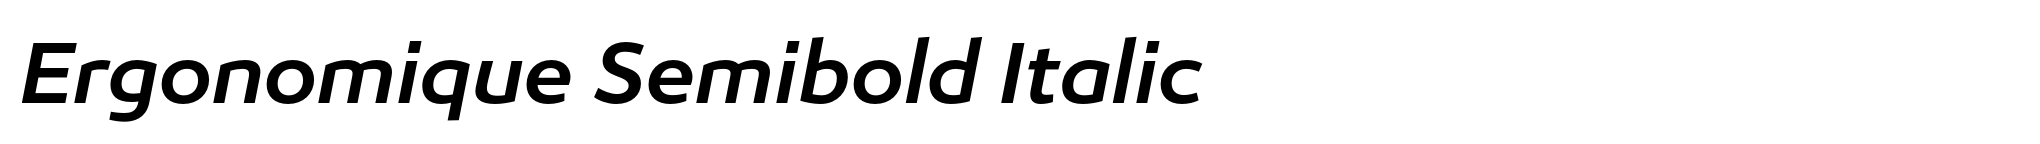 Ergonomique Semibold Italic image